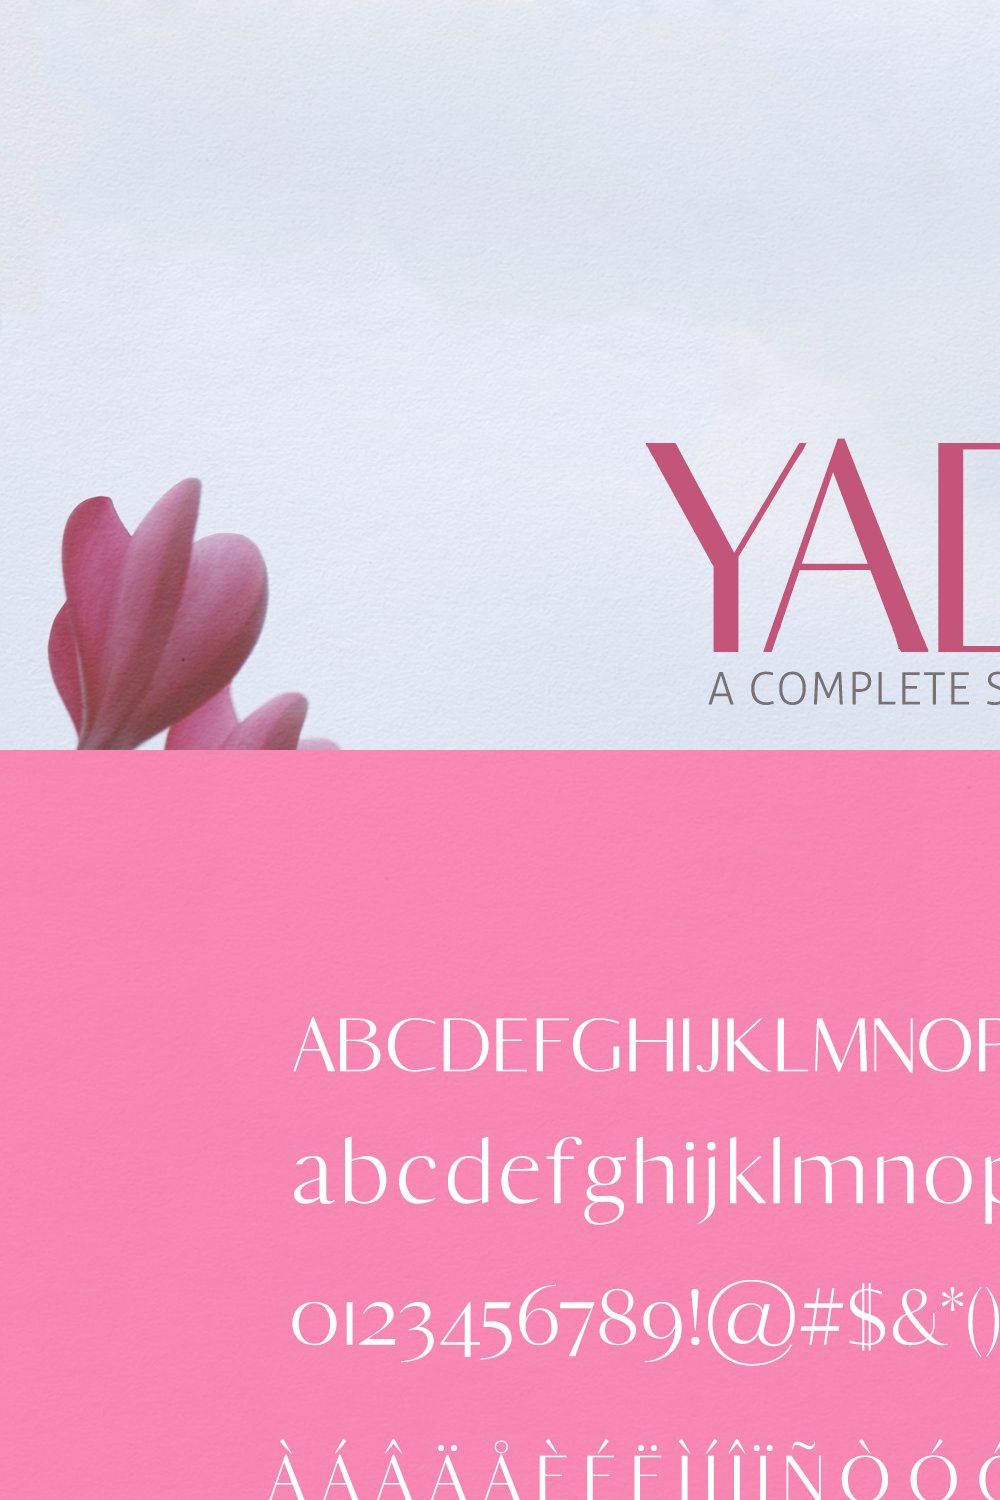 Yadon Sans Serif Fonts Family Pack pinterest preview image.